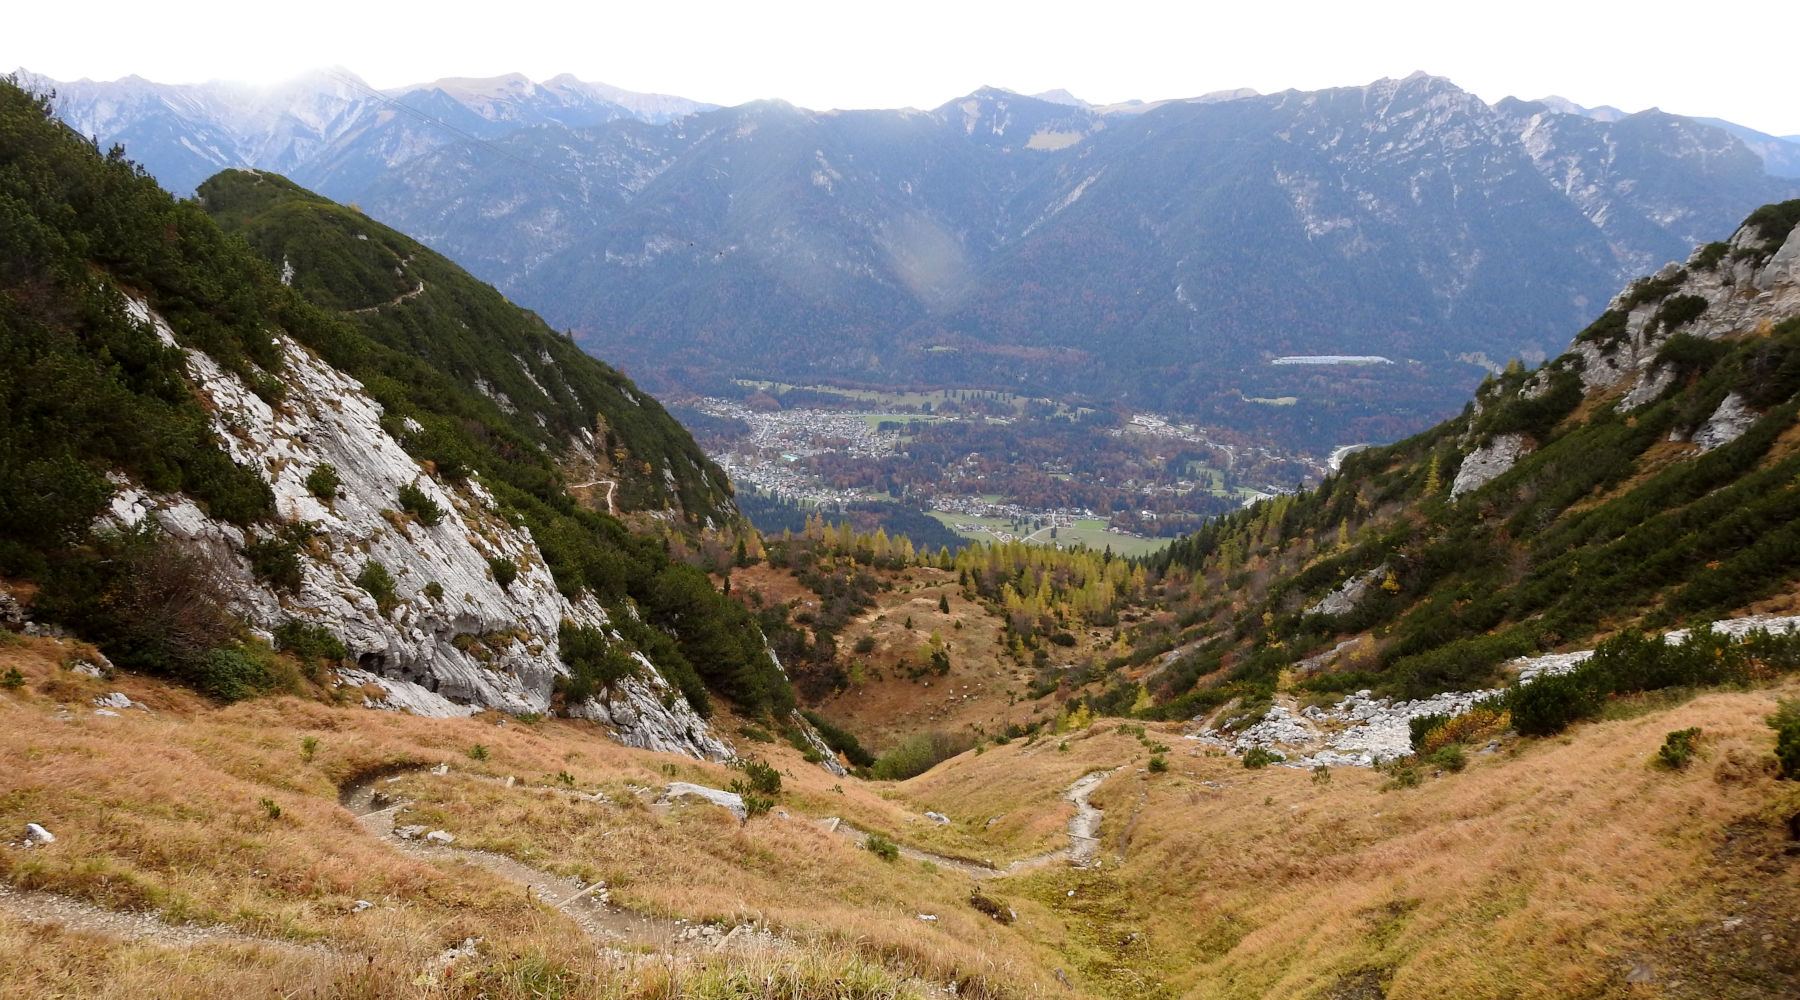 Badersee Blog: Hiking Through Höllentalklamm Gorge To Hochalm